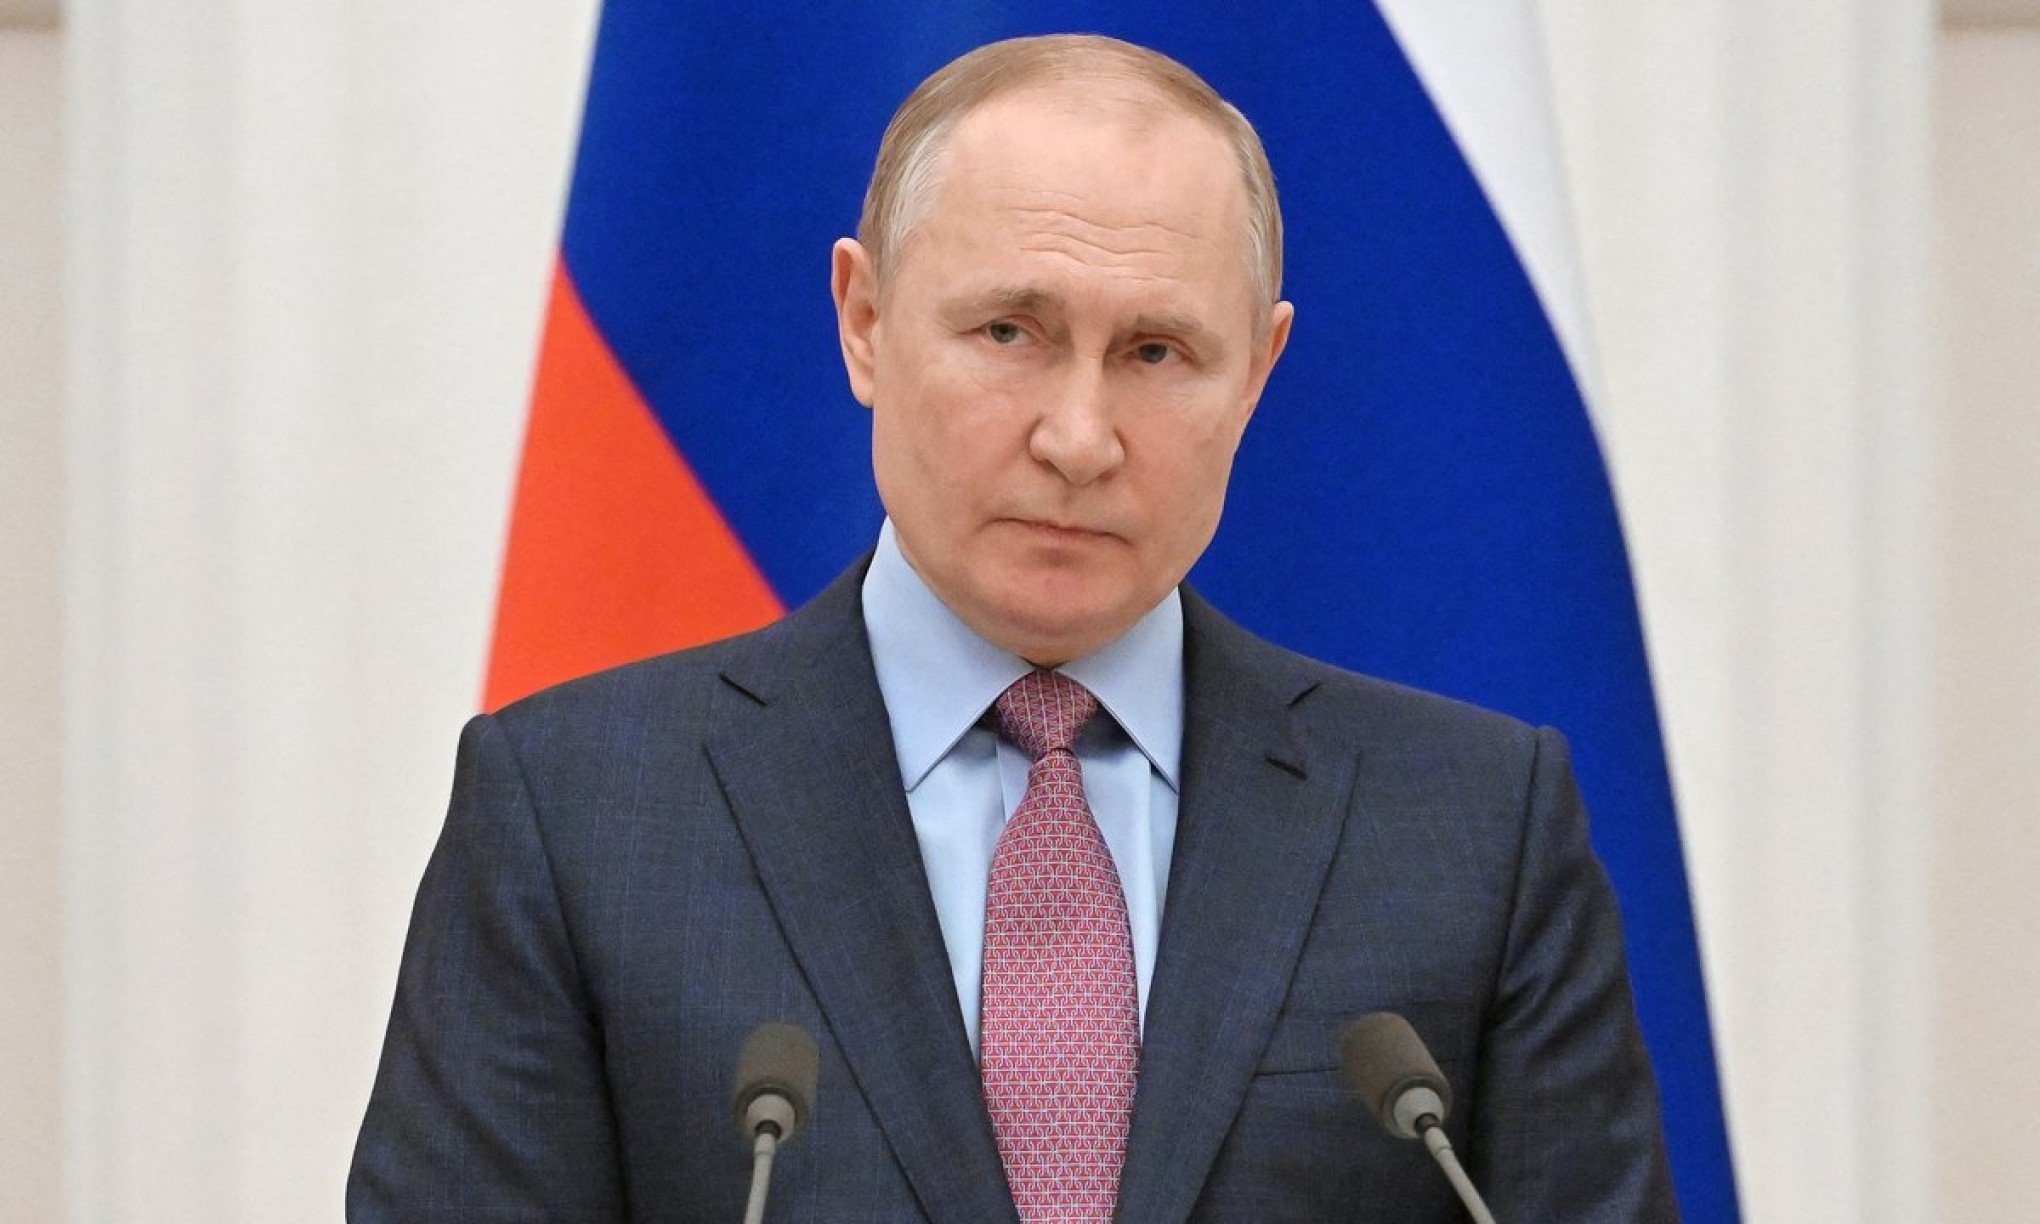 Putin vence eleição na Rússia com mais de 85% dos votos; confira as reações pelo mundo